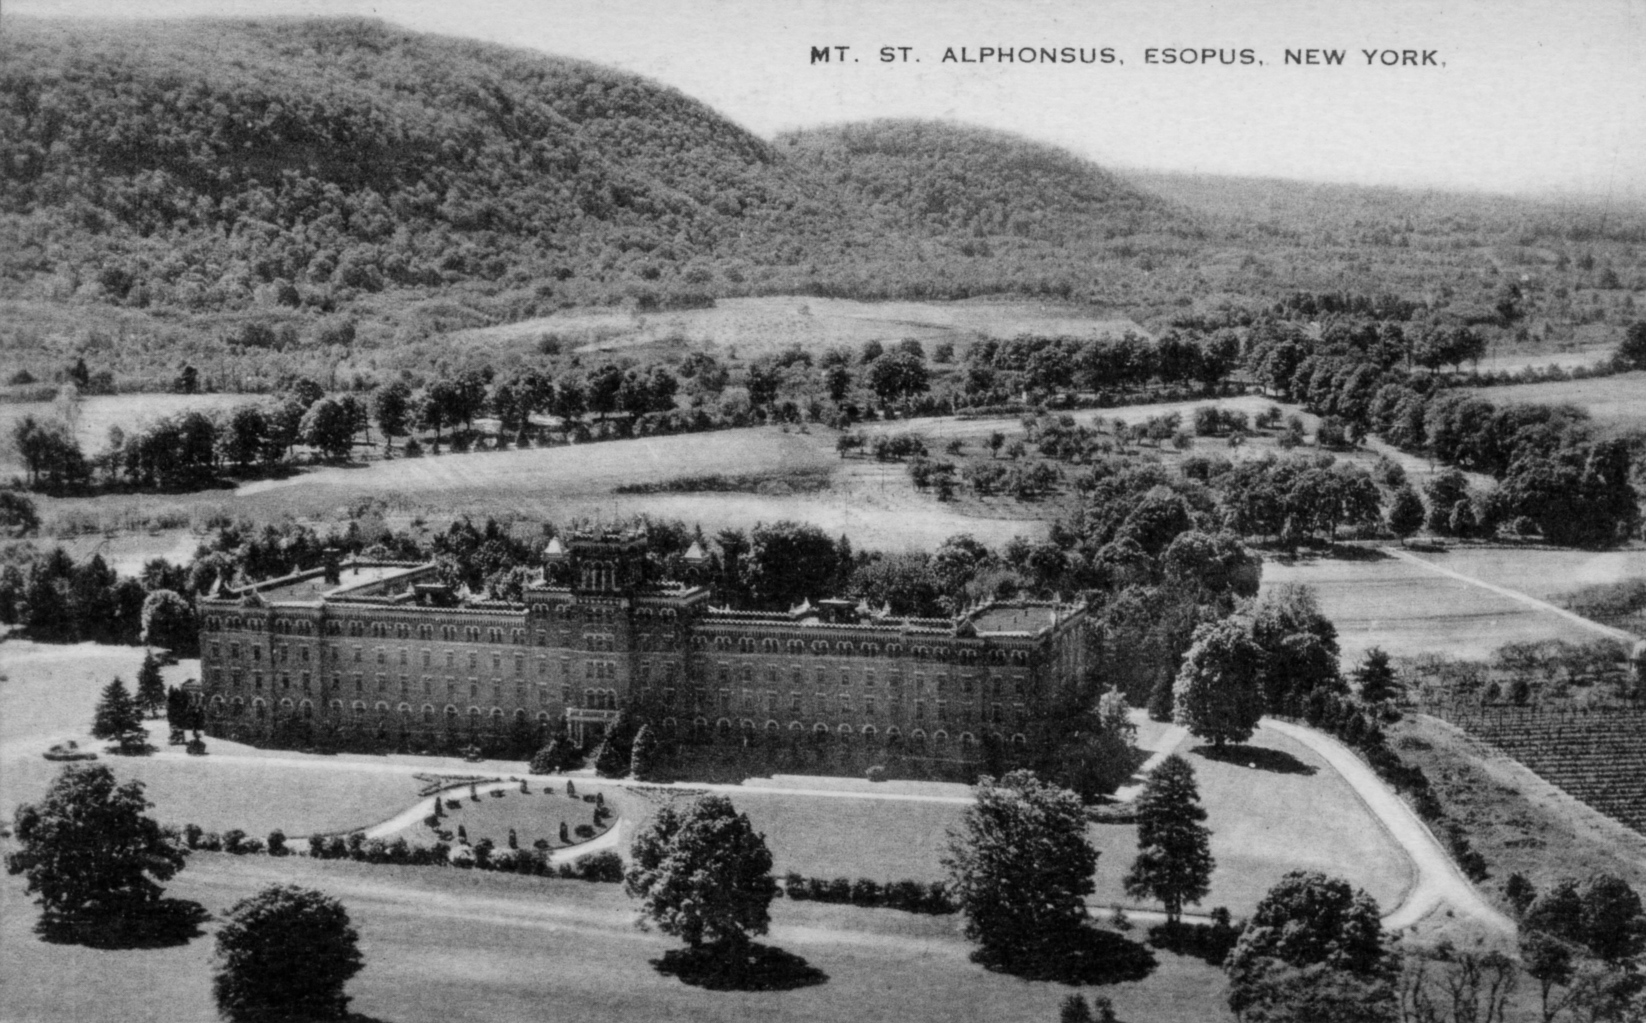 Mount Saint Alphonsus College, Esopus New York